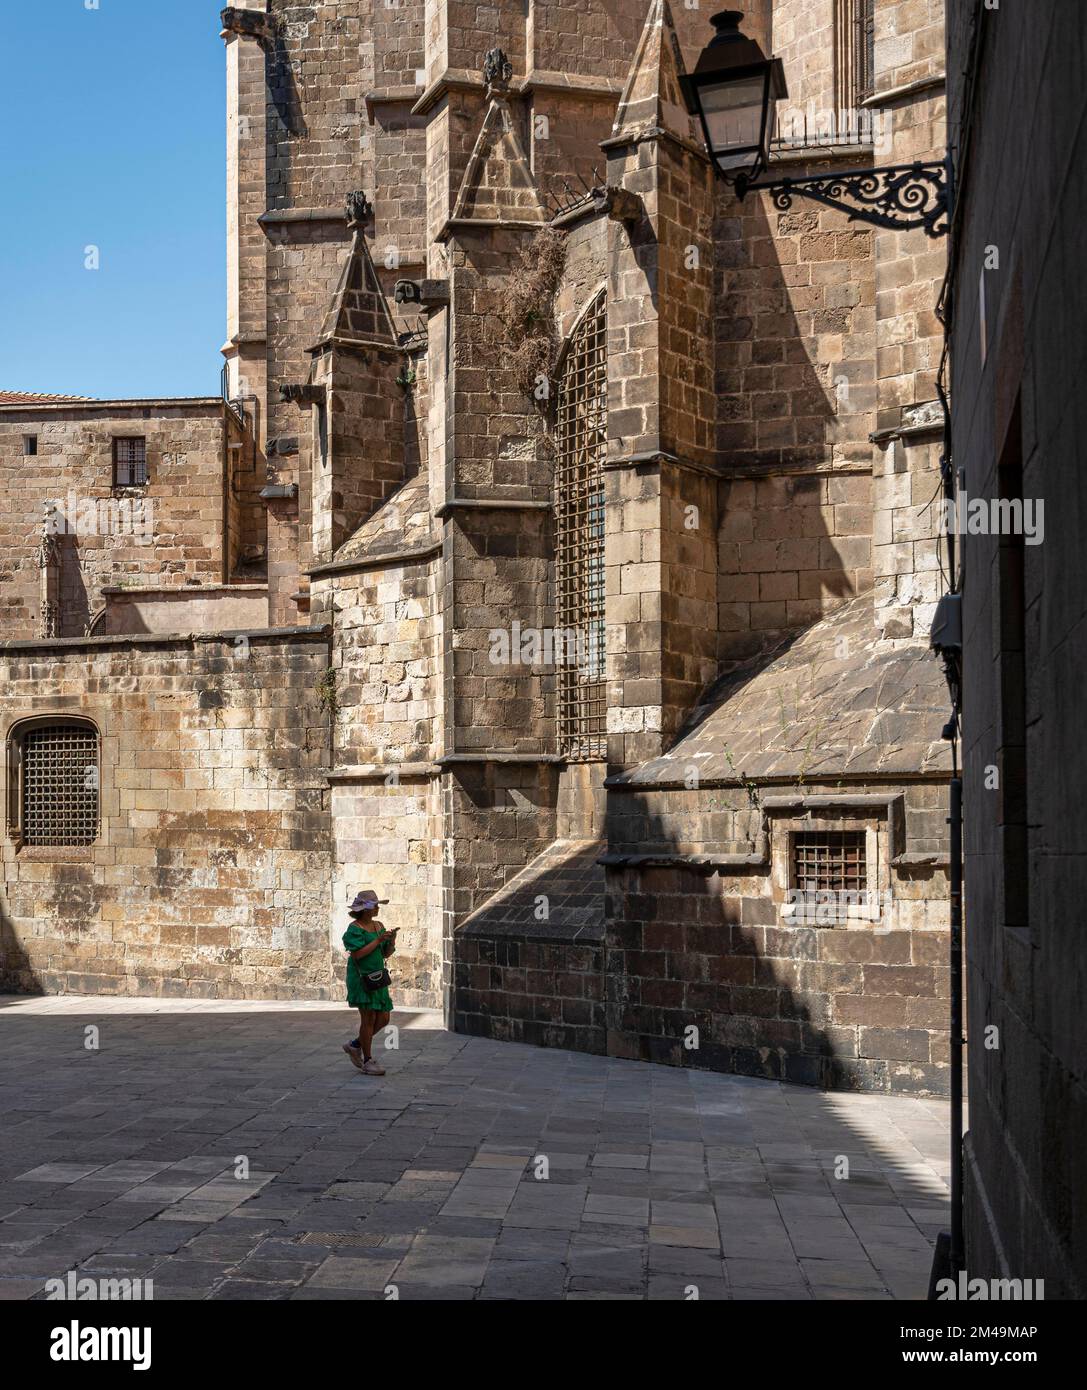 Rear of La Catedral de la Santa Creu in the Barri Gotic district, Barcelona, Catalonia, Spain Stock Photo